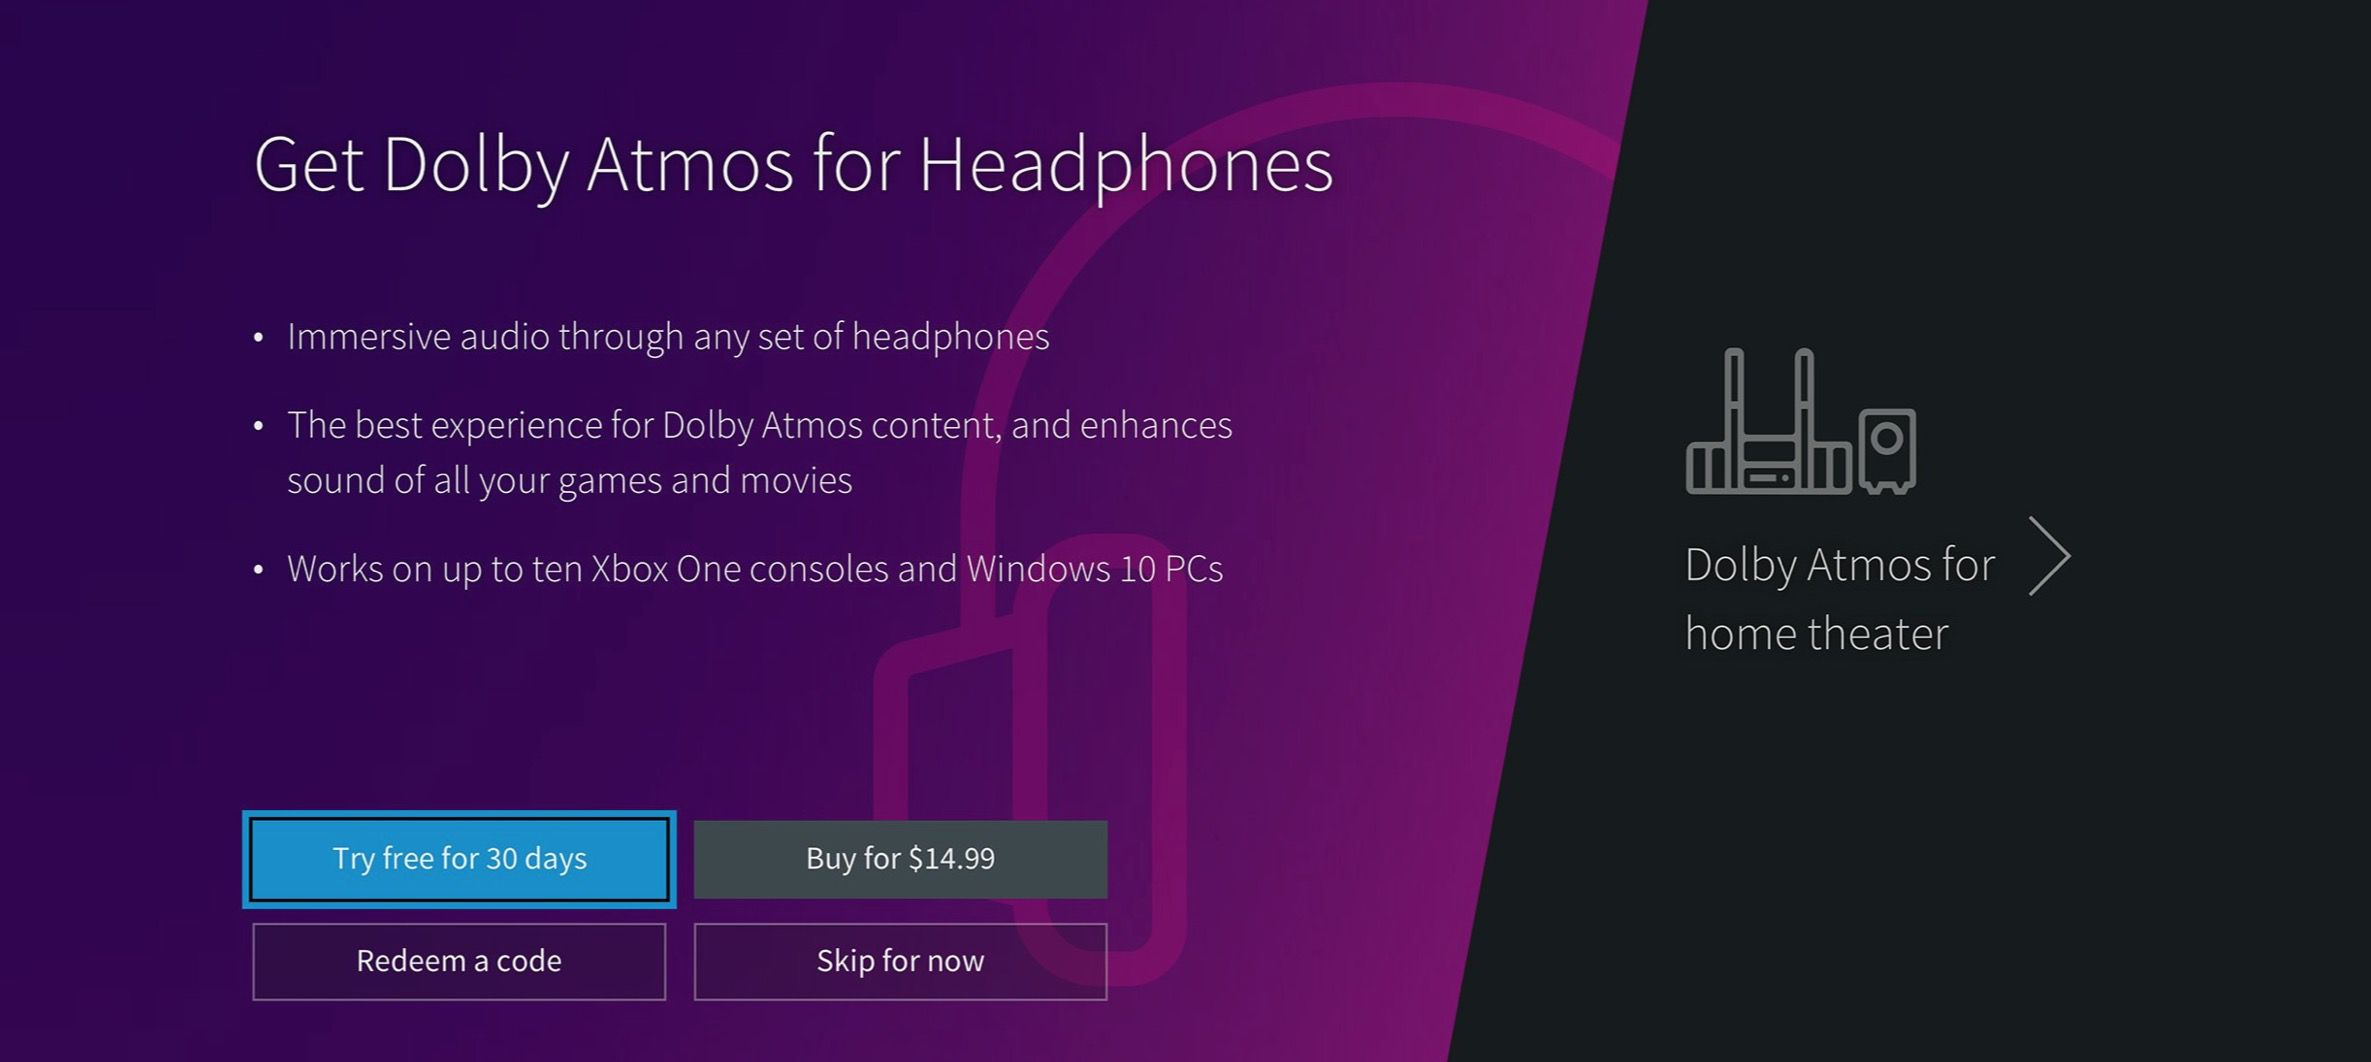 Obrázek zobrazující výhody Dolby Atmos pro sluchátka